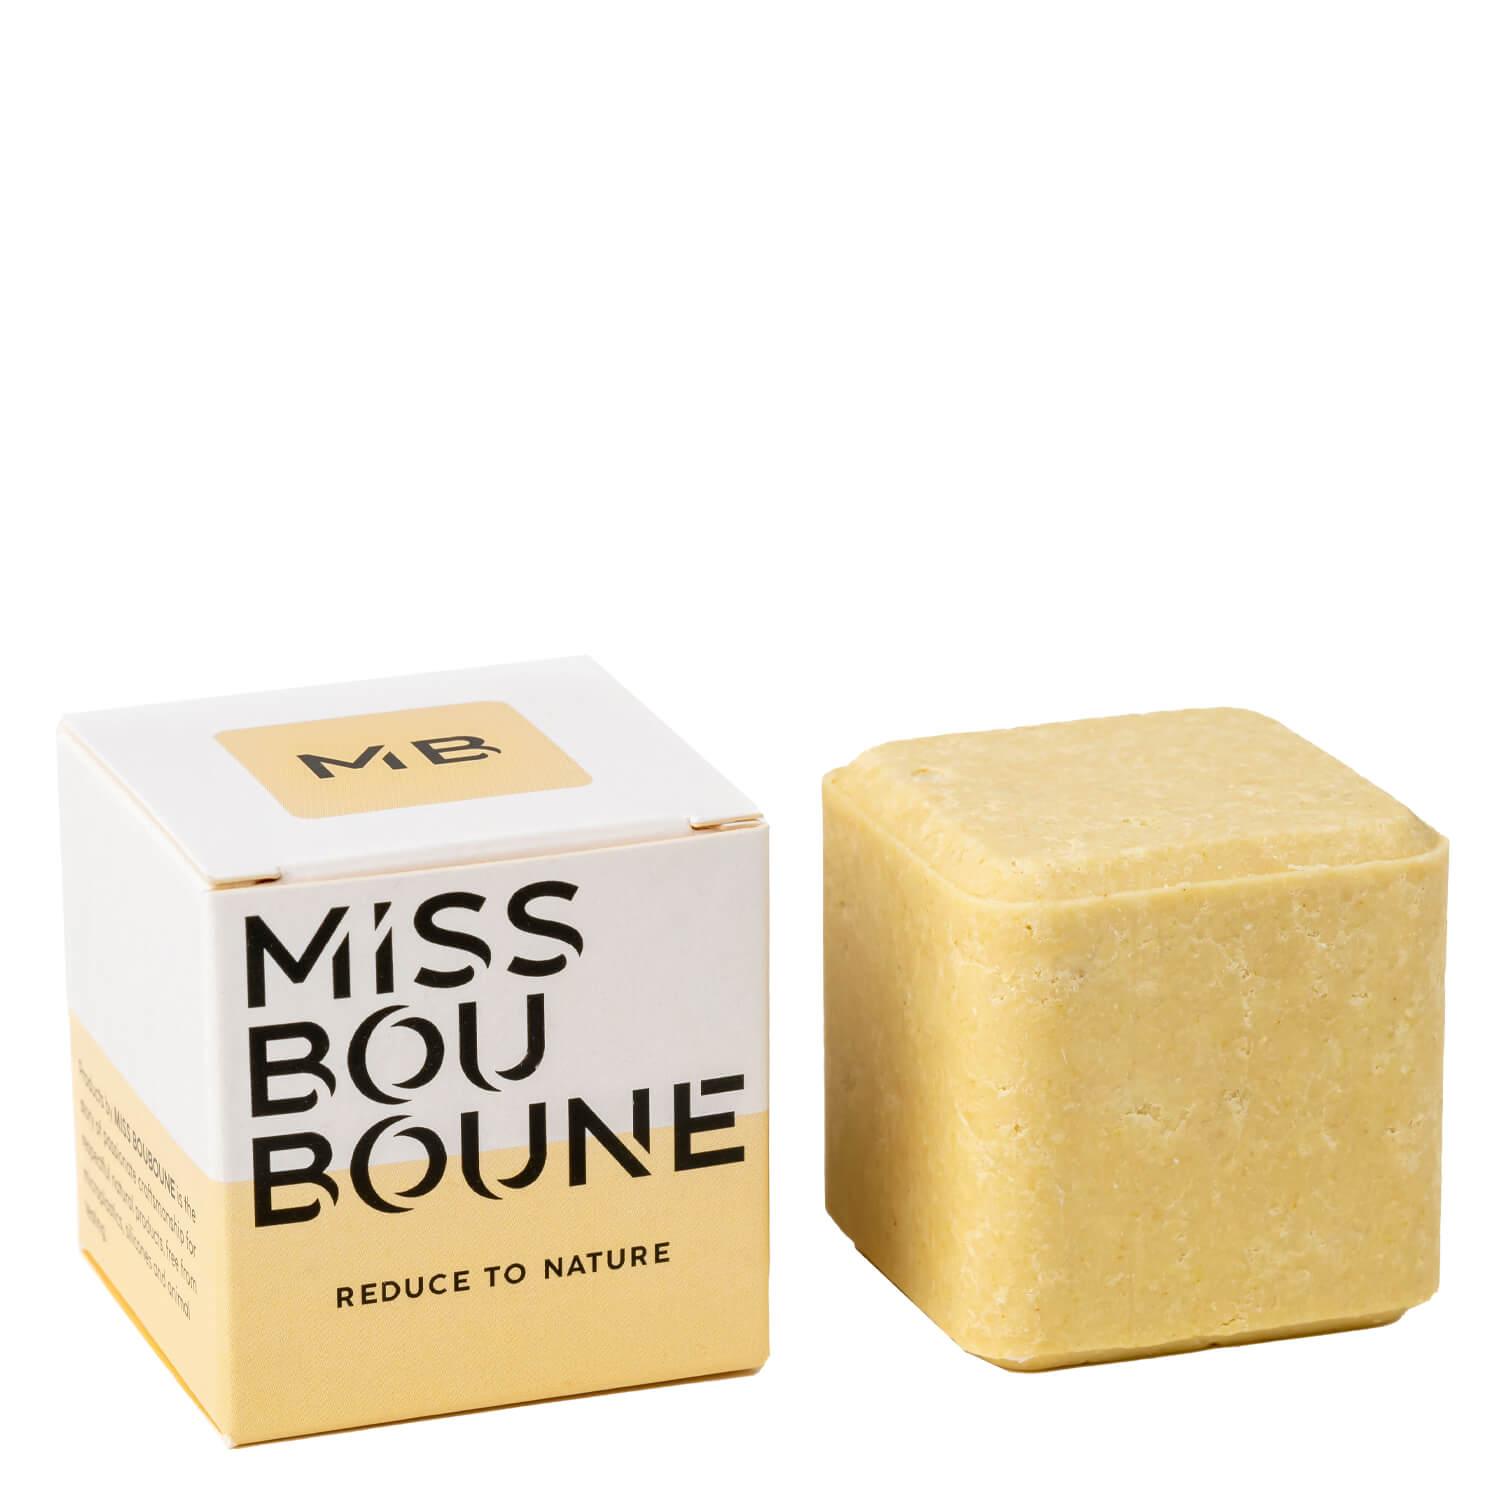 Miss Bouboune - Shampoo Bar SAM